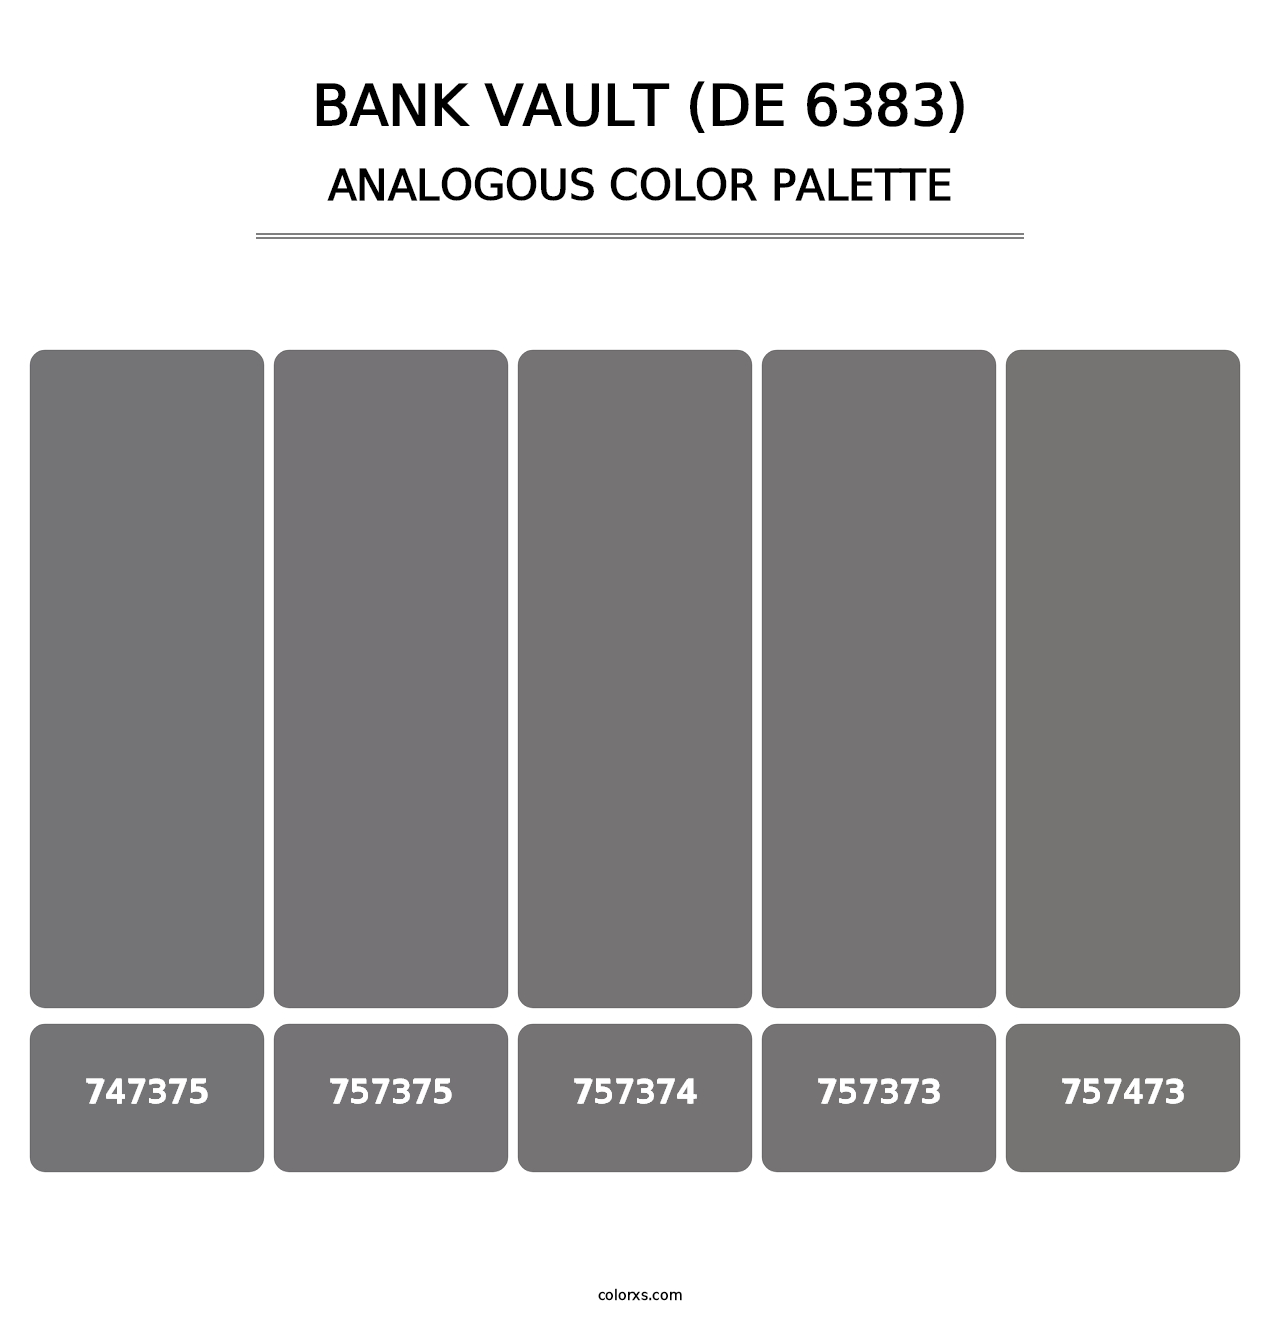 Bank Vault (DE 6383) - Analogous Color Palette